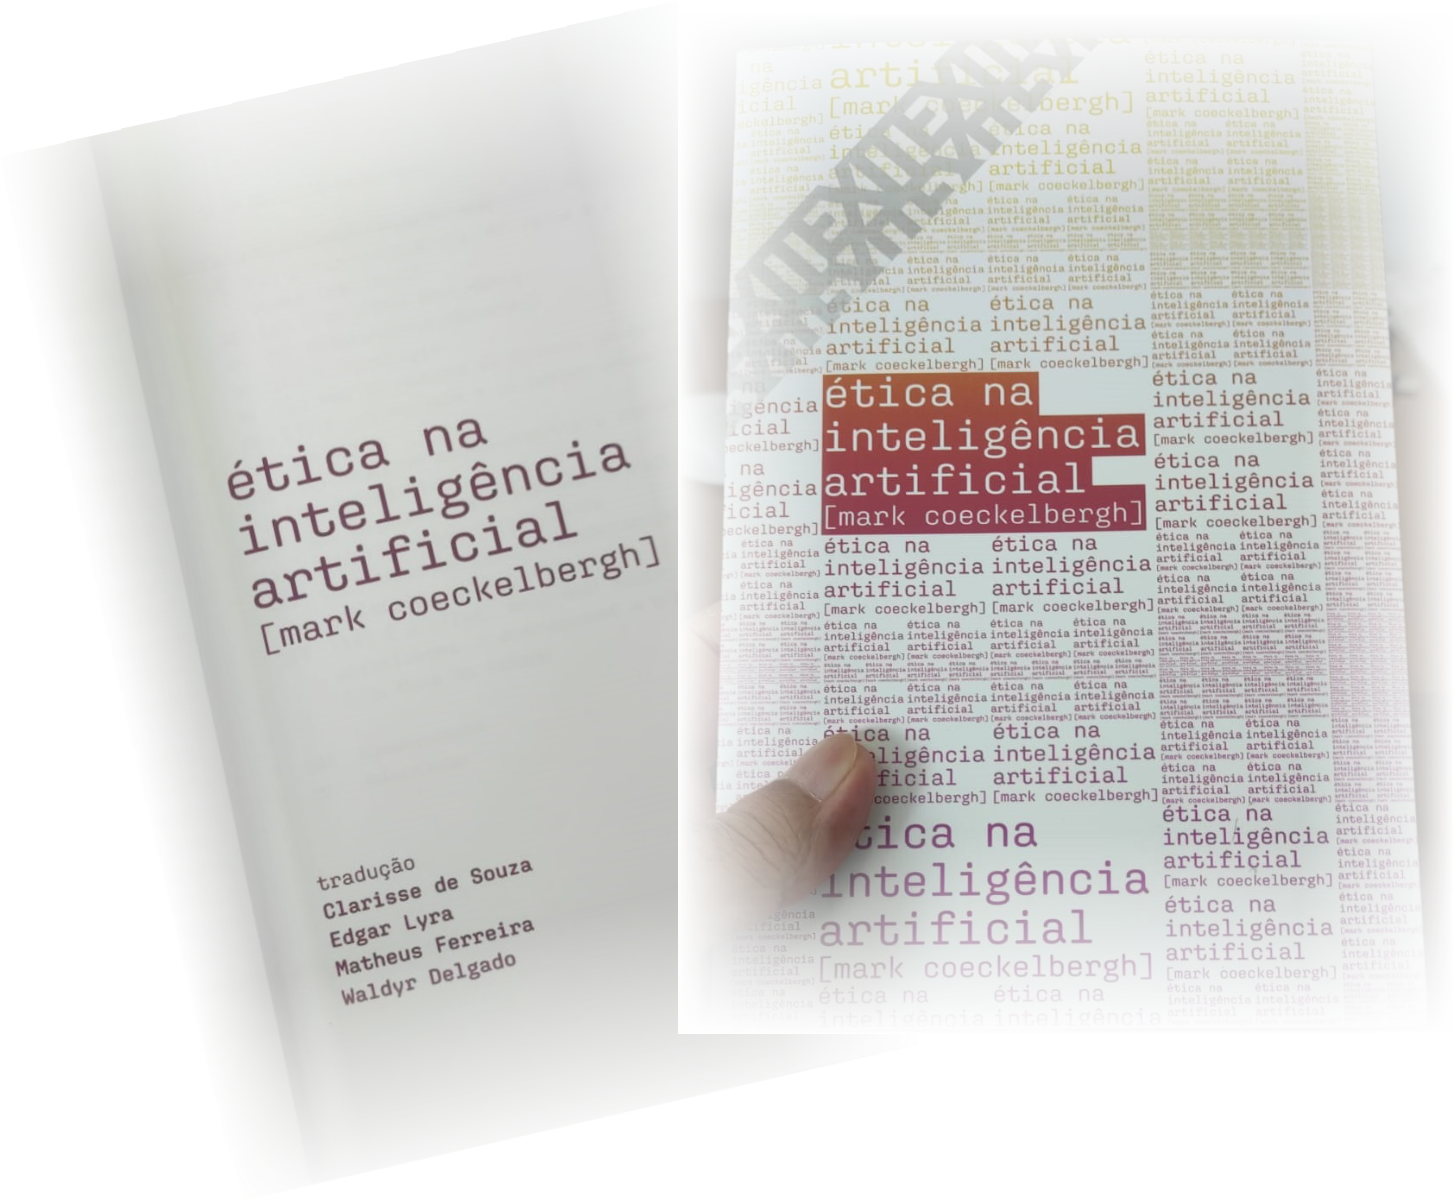 Capa de "Ética na IA" e página com título, autor e tradutores do EMAPS